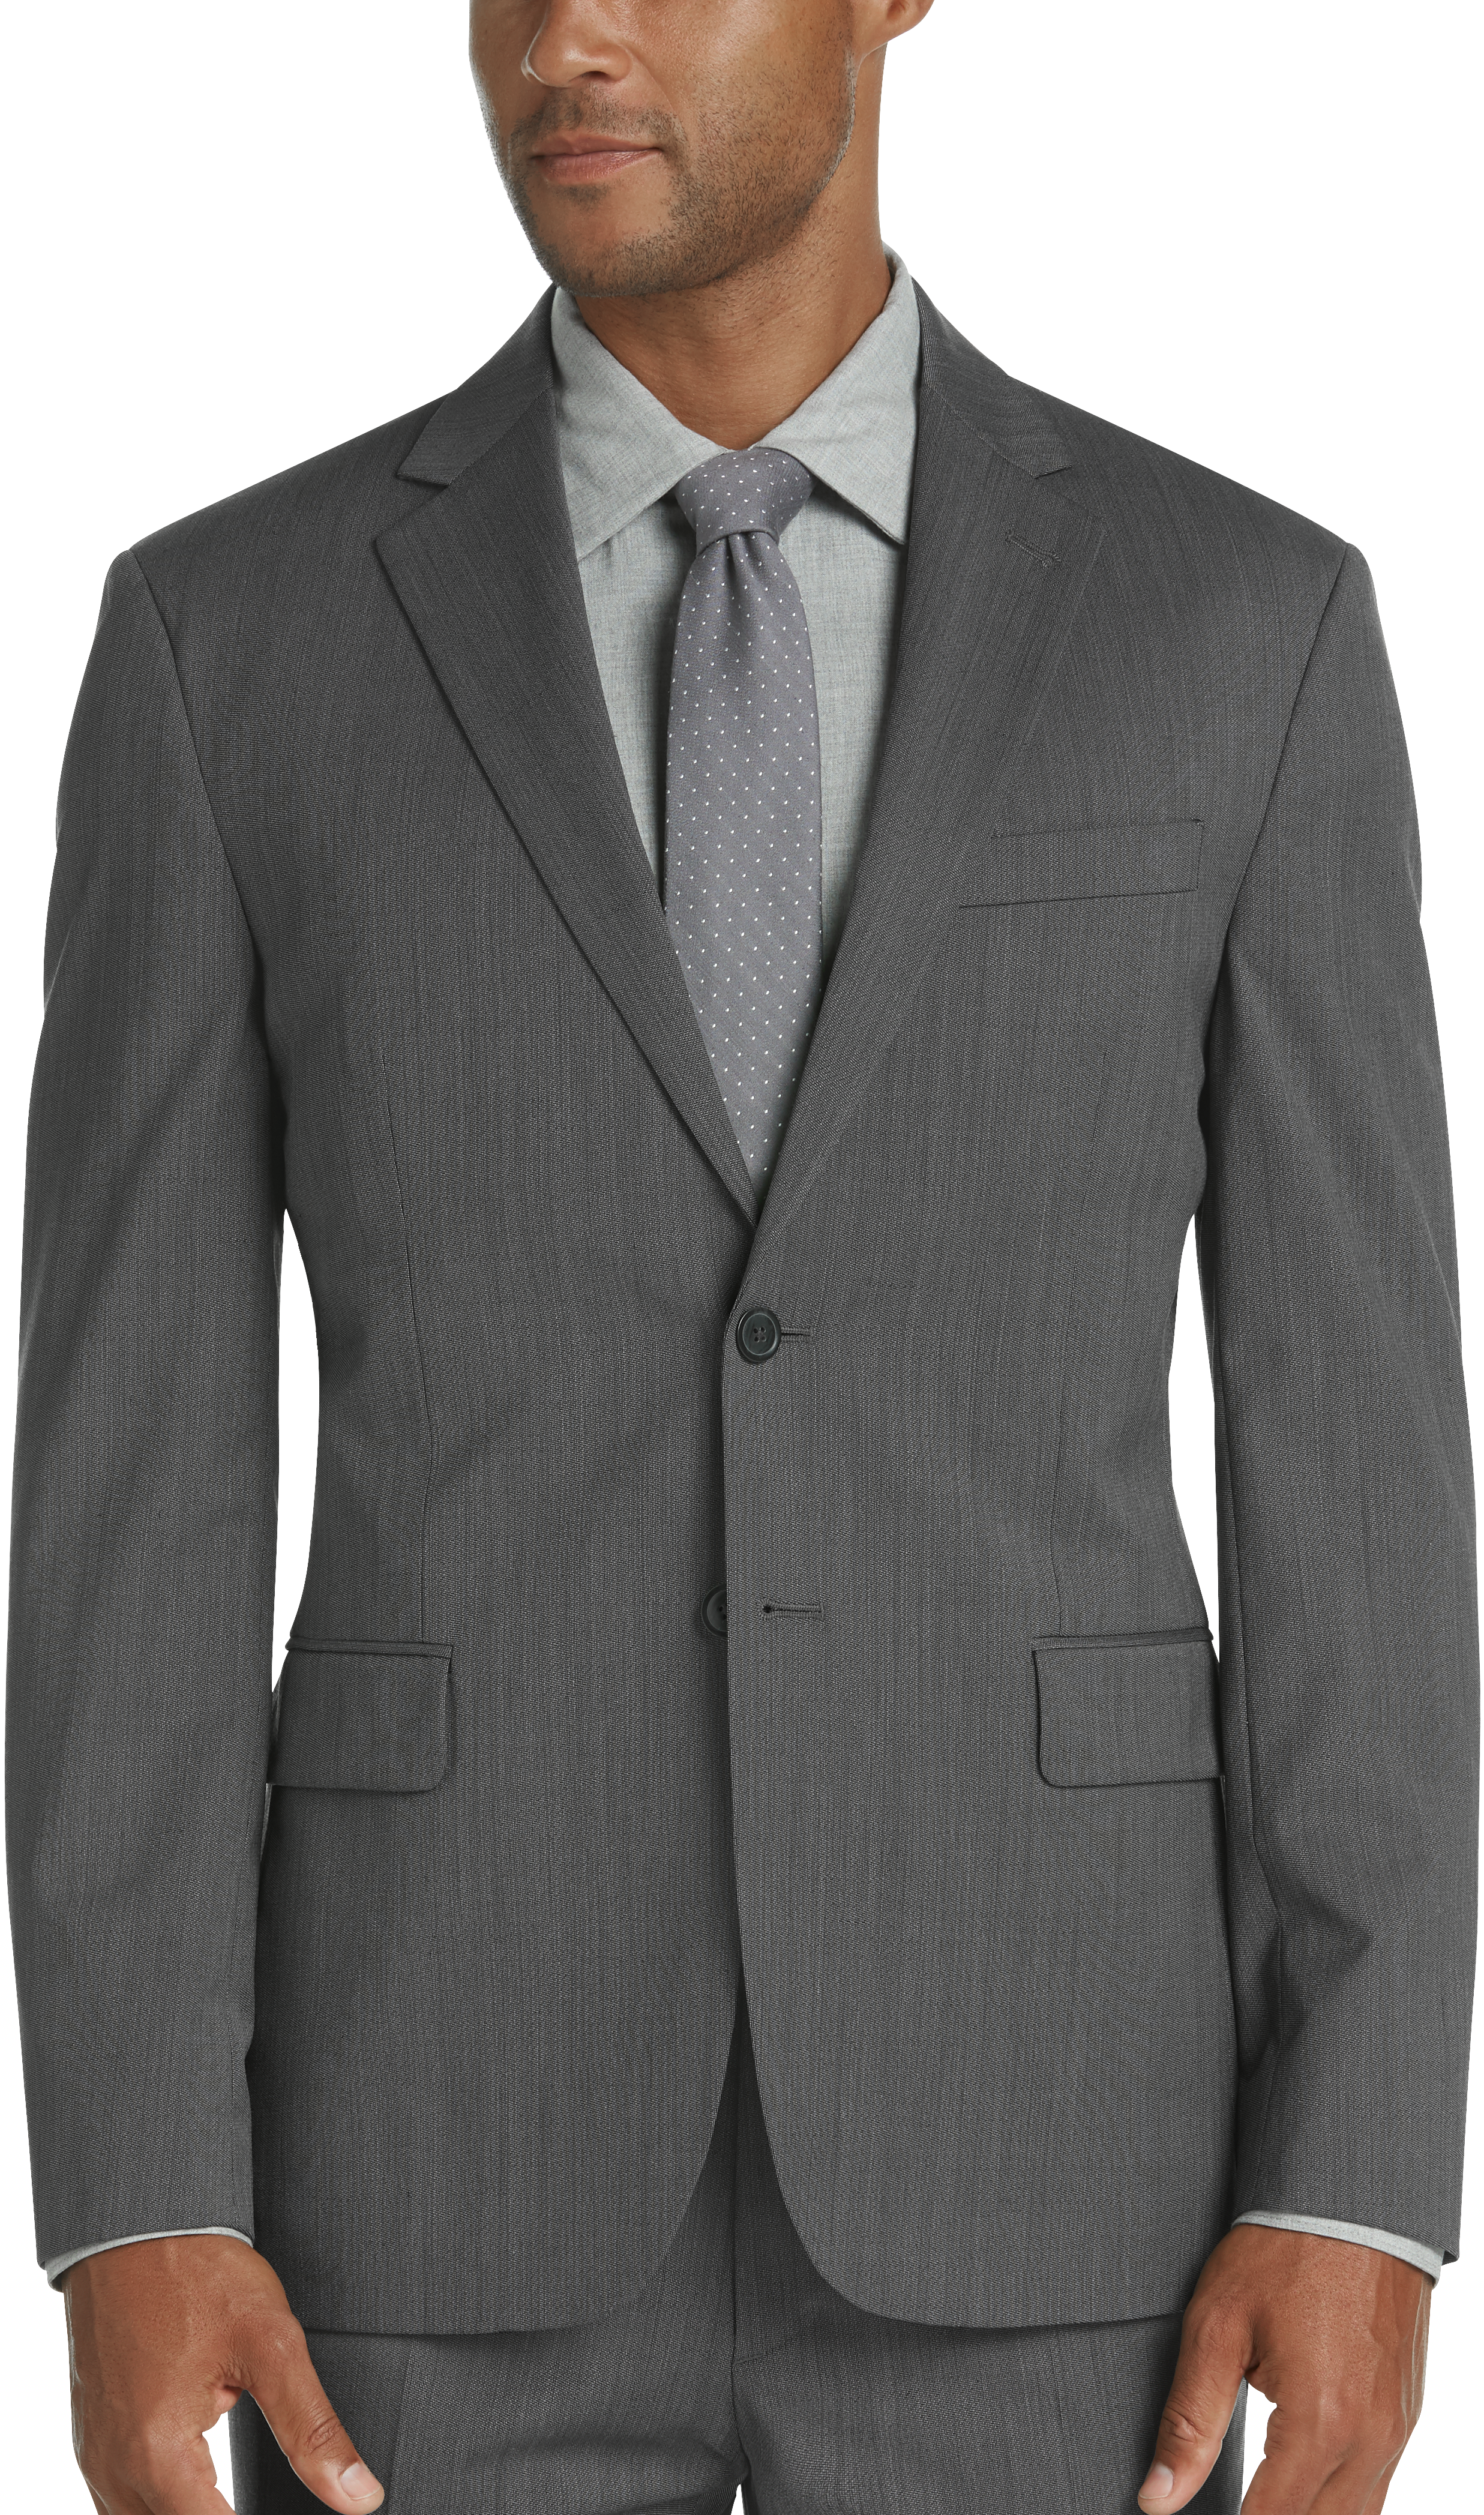 JOE Joseph Abboud Brrr° Gray Tic Slim Fit Suit - Men's Suits | Men's ...